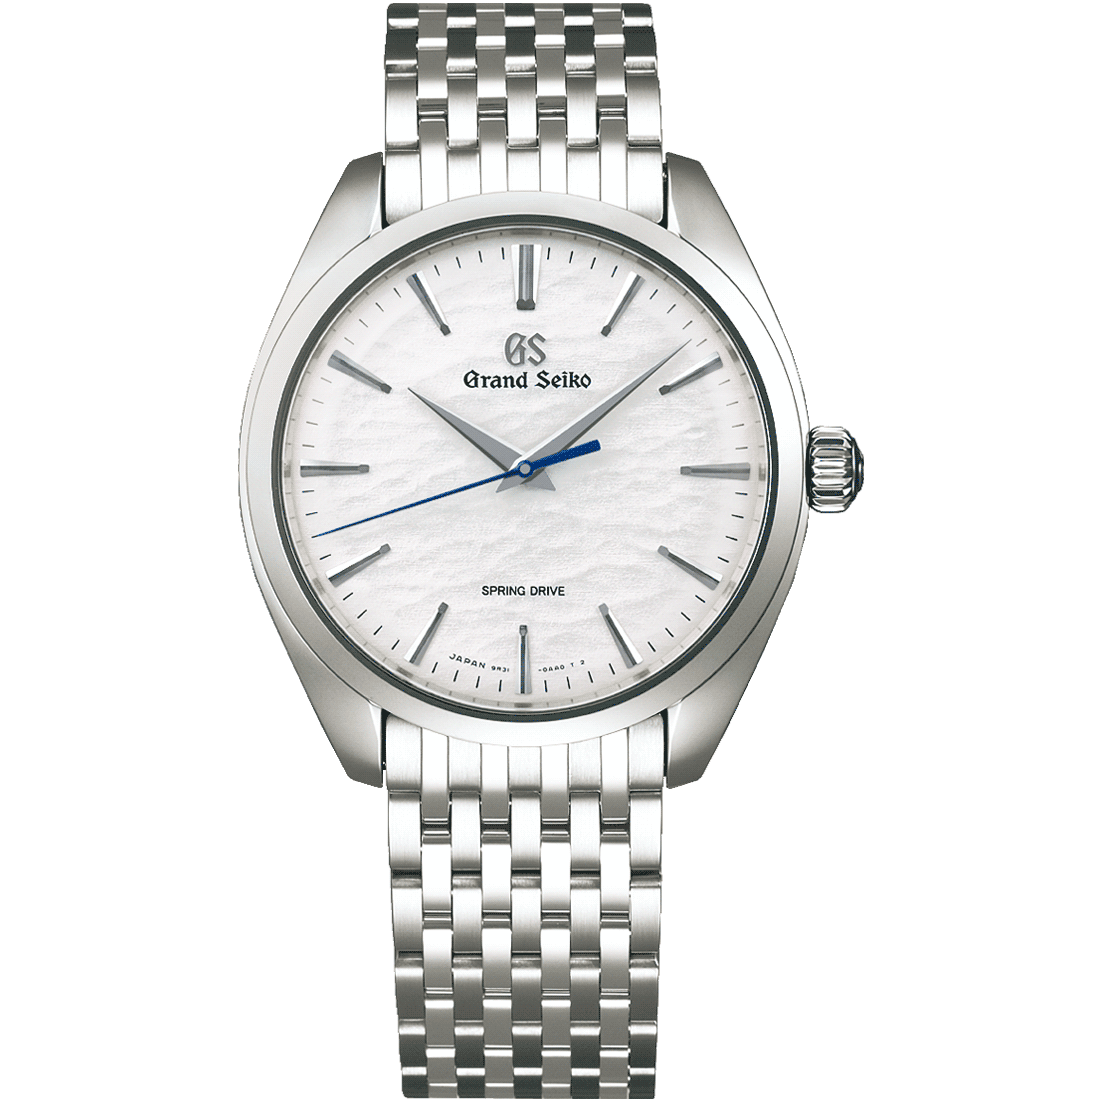 Grand Seiko SBGY013 white dial watch on bracelet